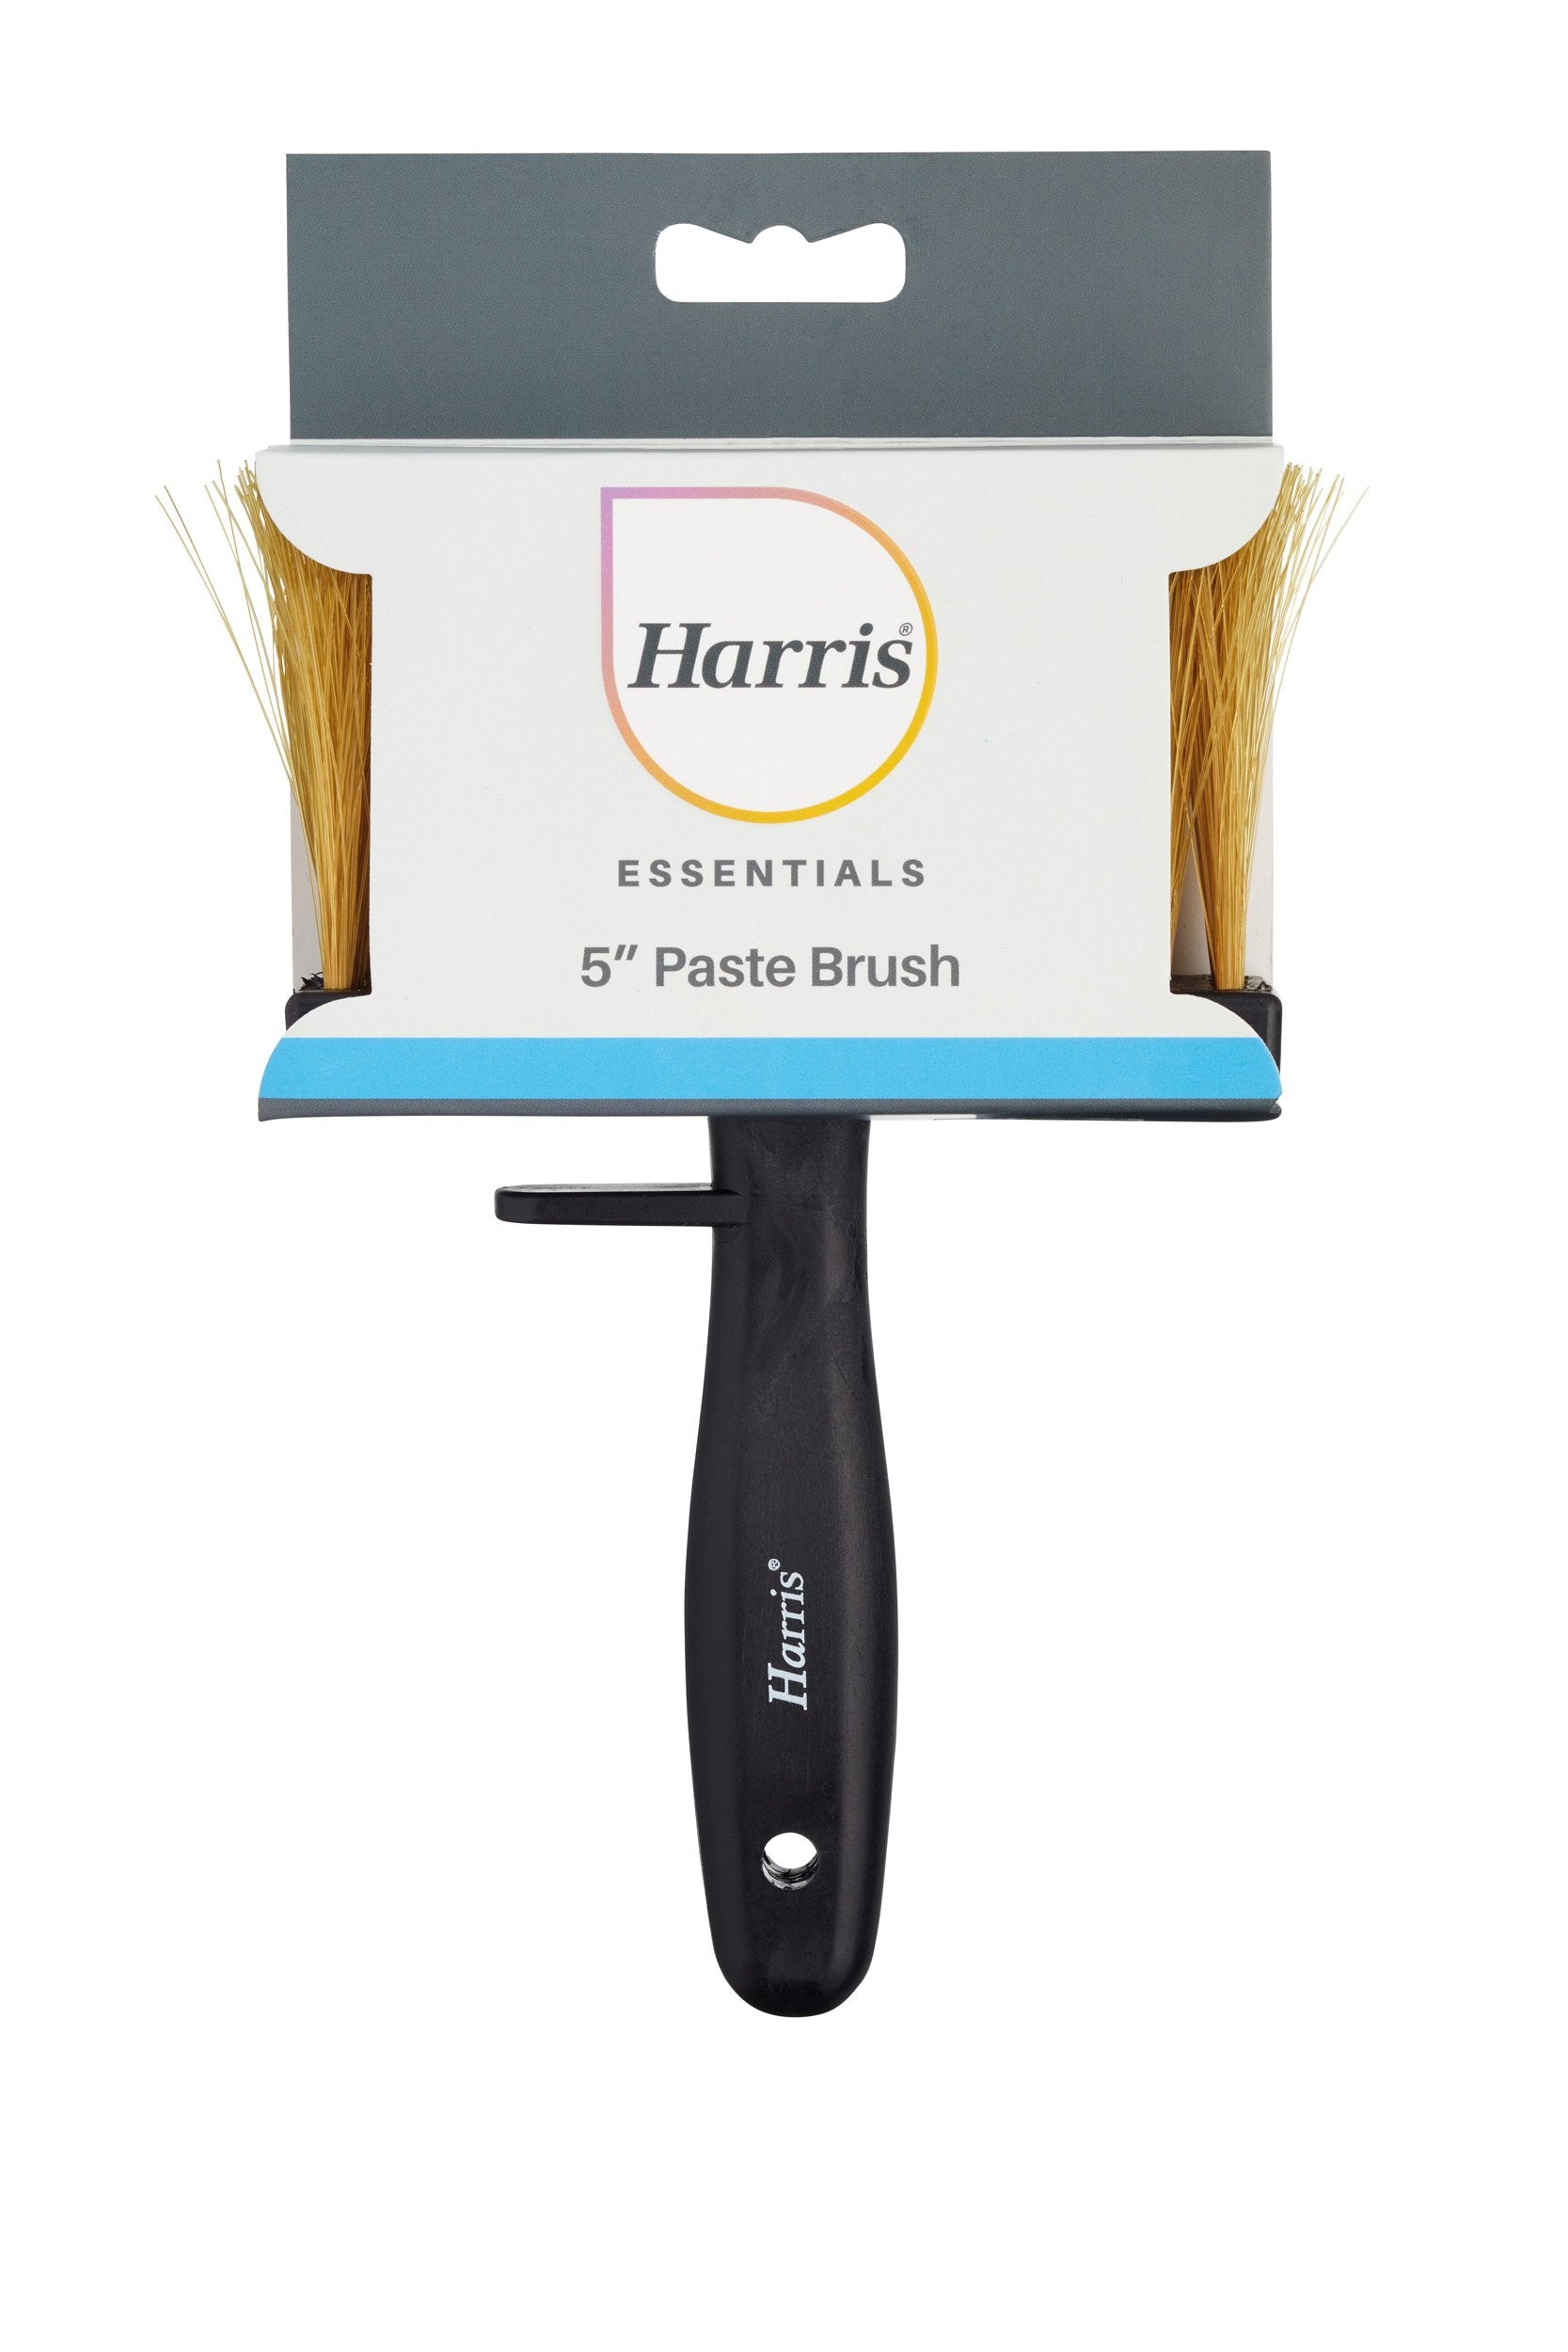 Harris-Essentials-Paste-Brush-5in